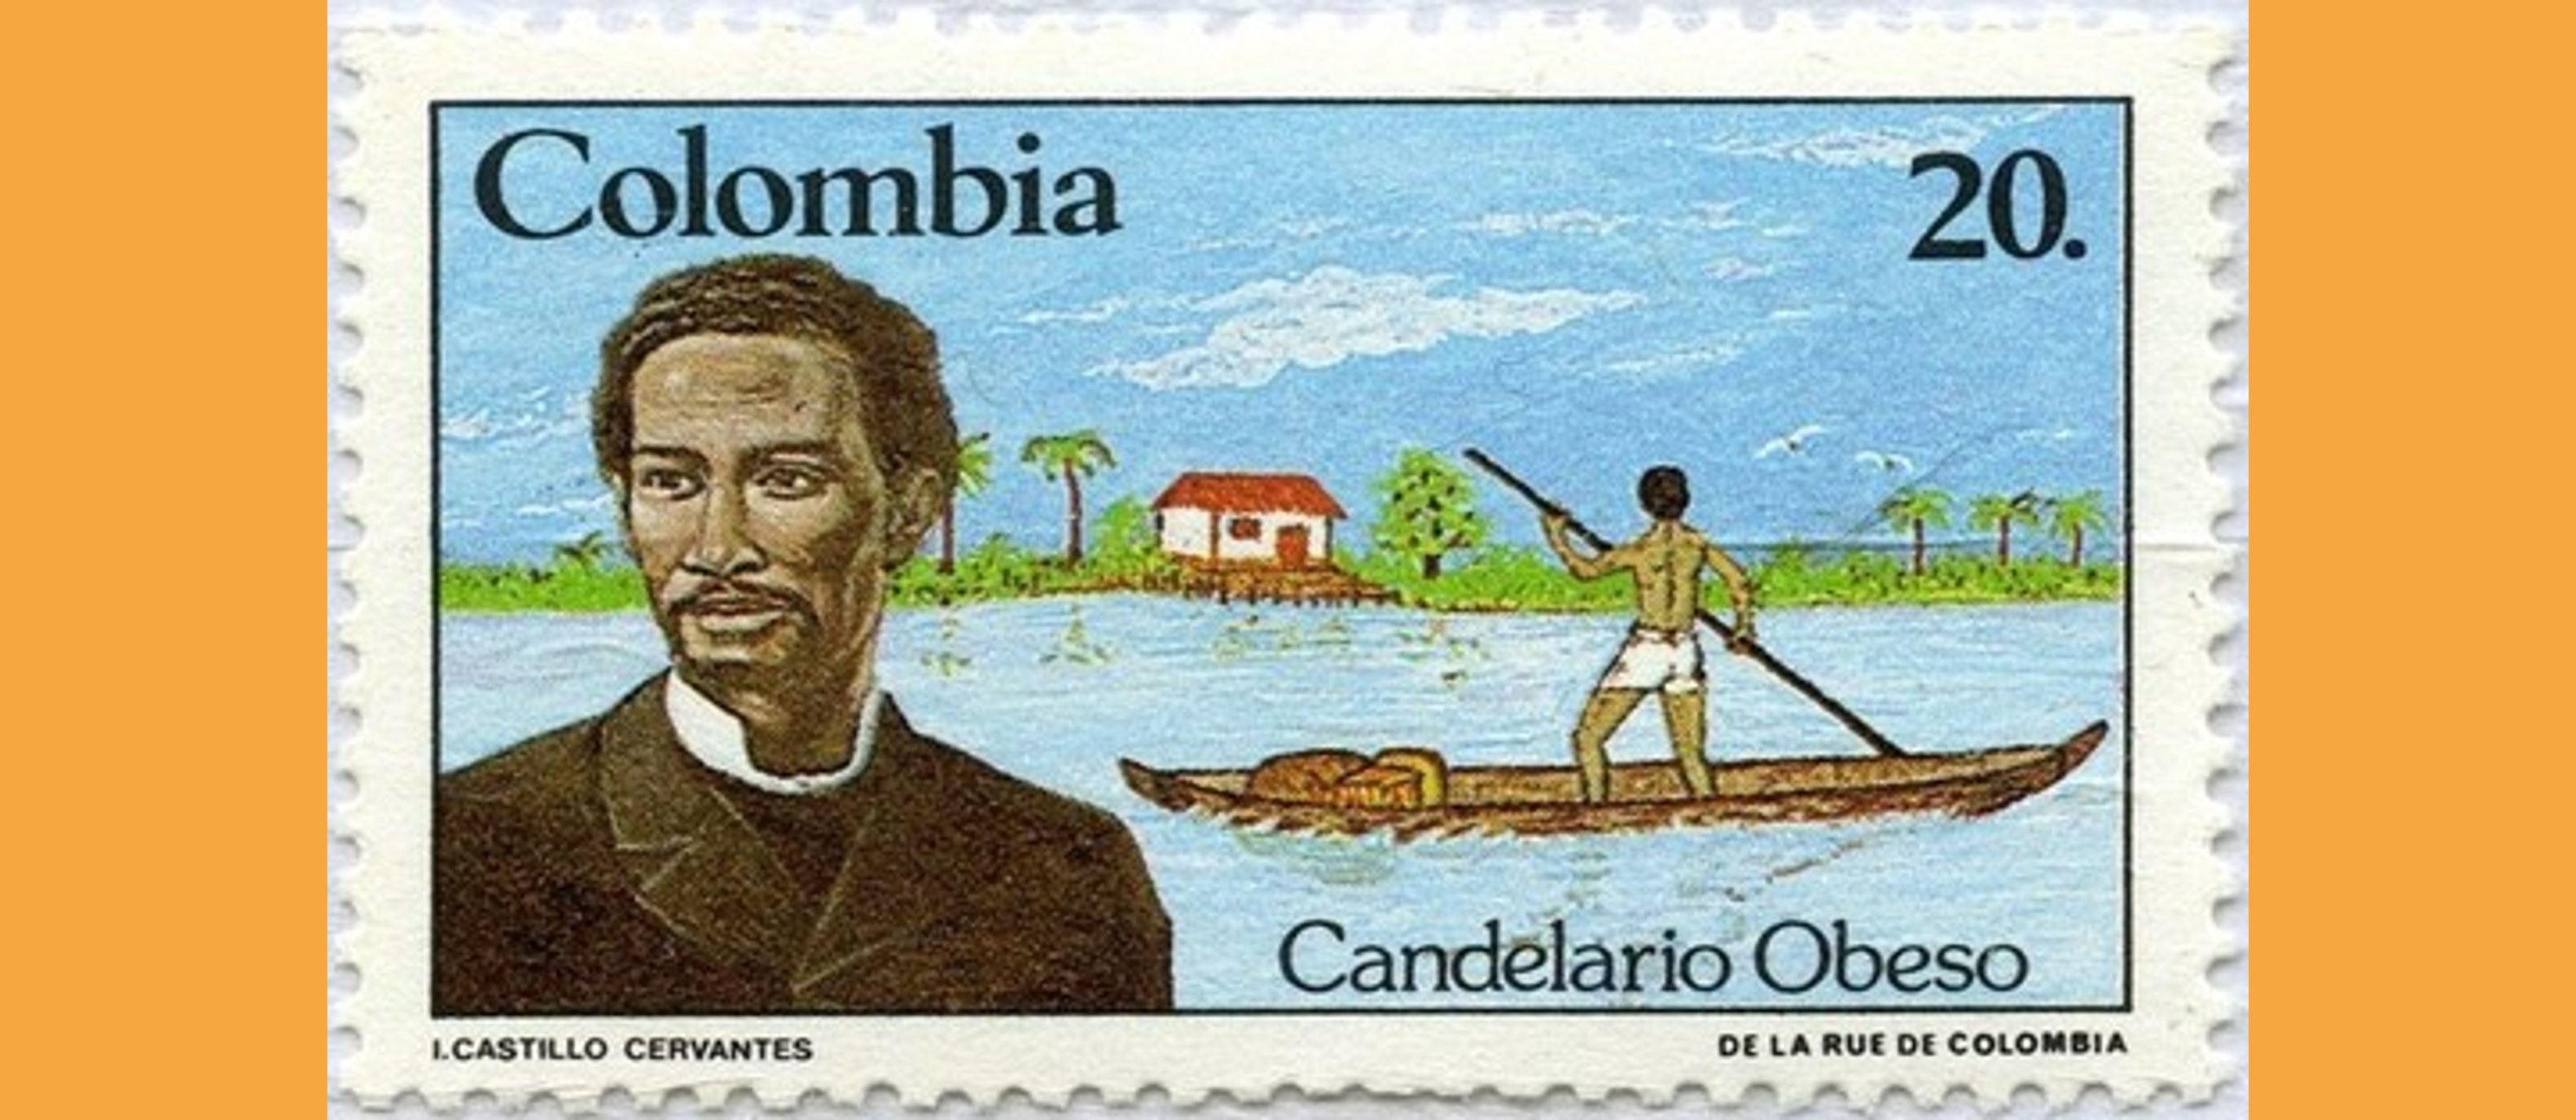 En los archivos de la Cancillería: Candelario Obeso, poeta afrocolombiano y Cónsul de Colombia en el siglo XIX